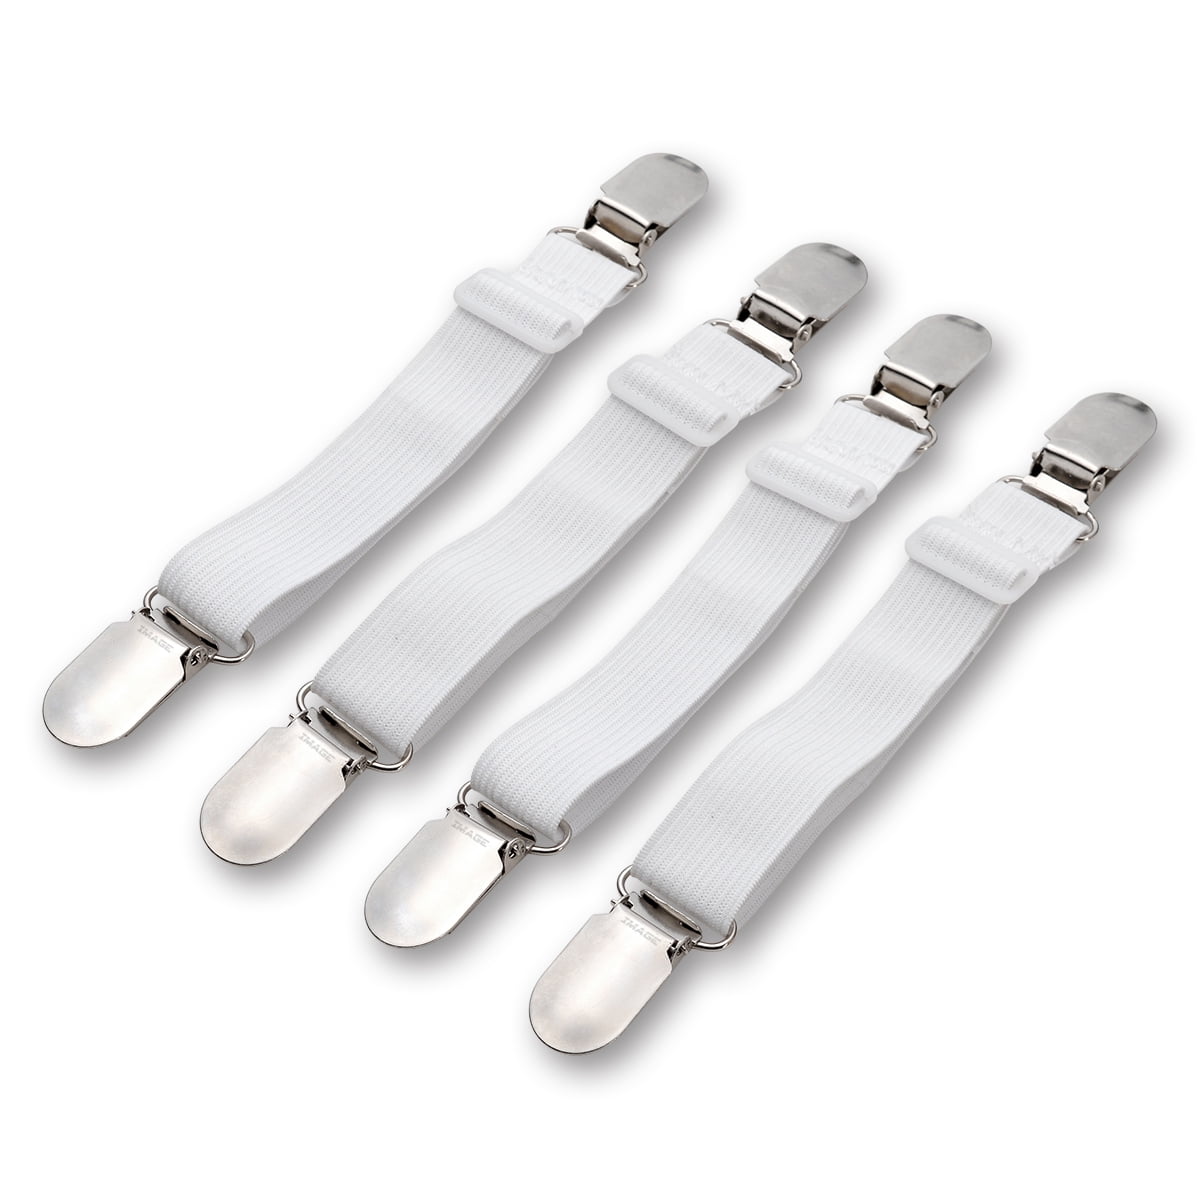 4PCS Adjustable Bed Sheet Elastic Suspender Corner Holder Straps Fasteners Clips 